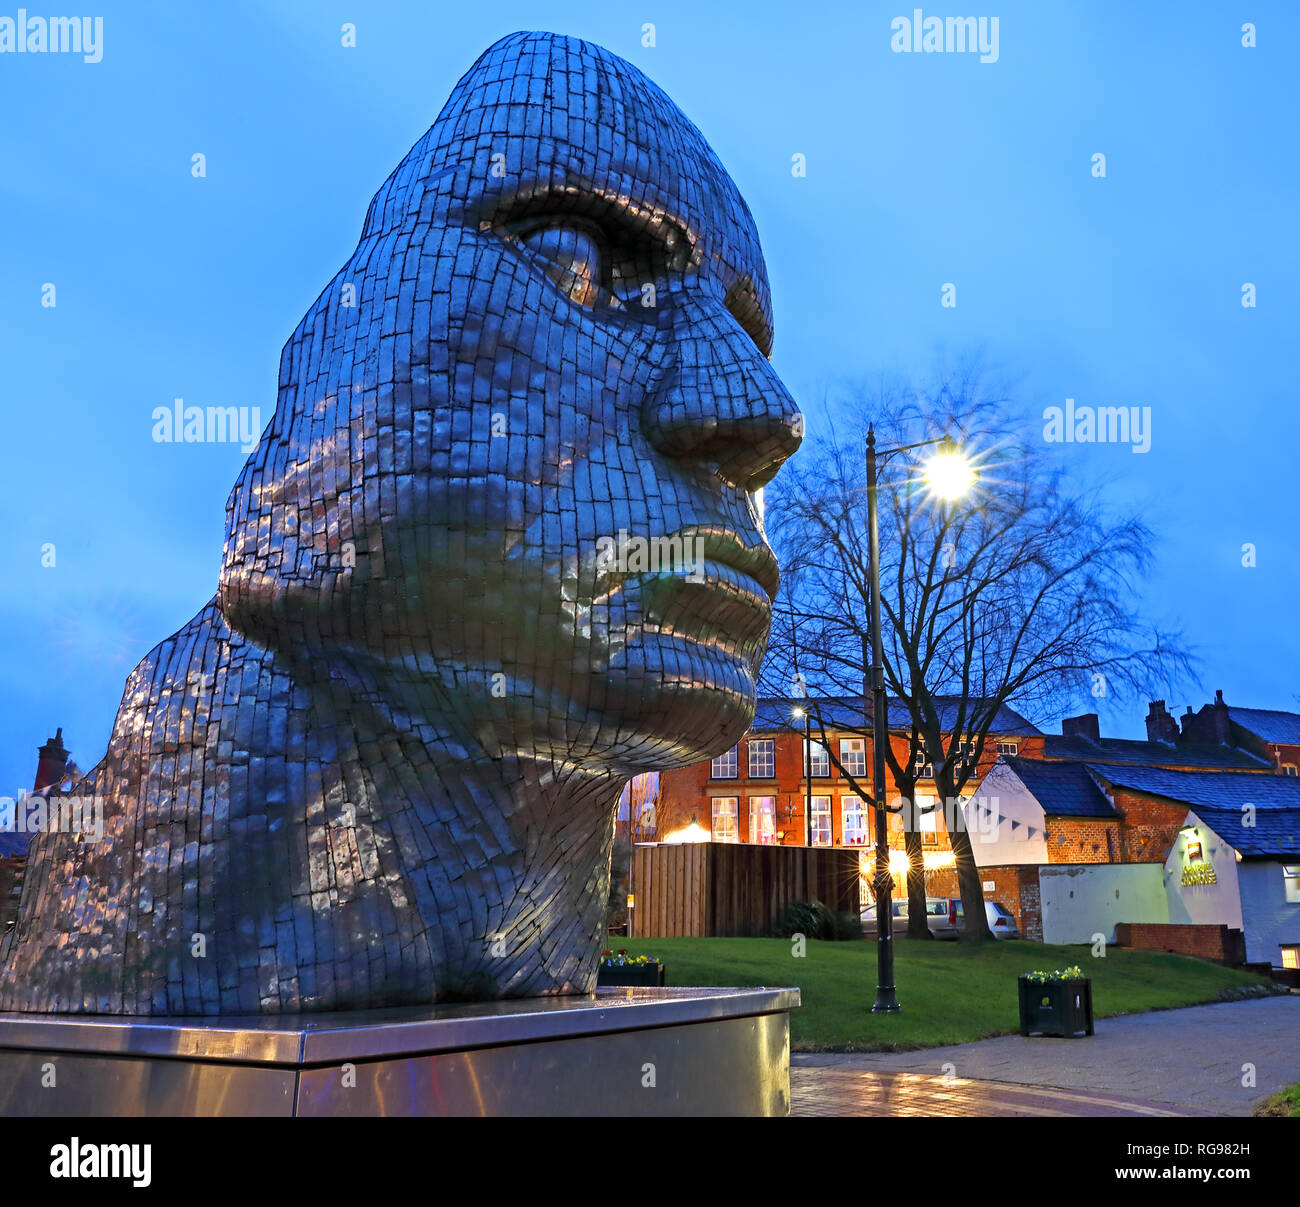 Das Gesicht von Wigan in der Dämmerung, Nacht Image der Stahlkonstruktion im Stadtzentrum, Stockfoto